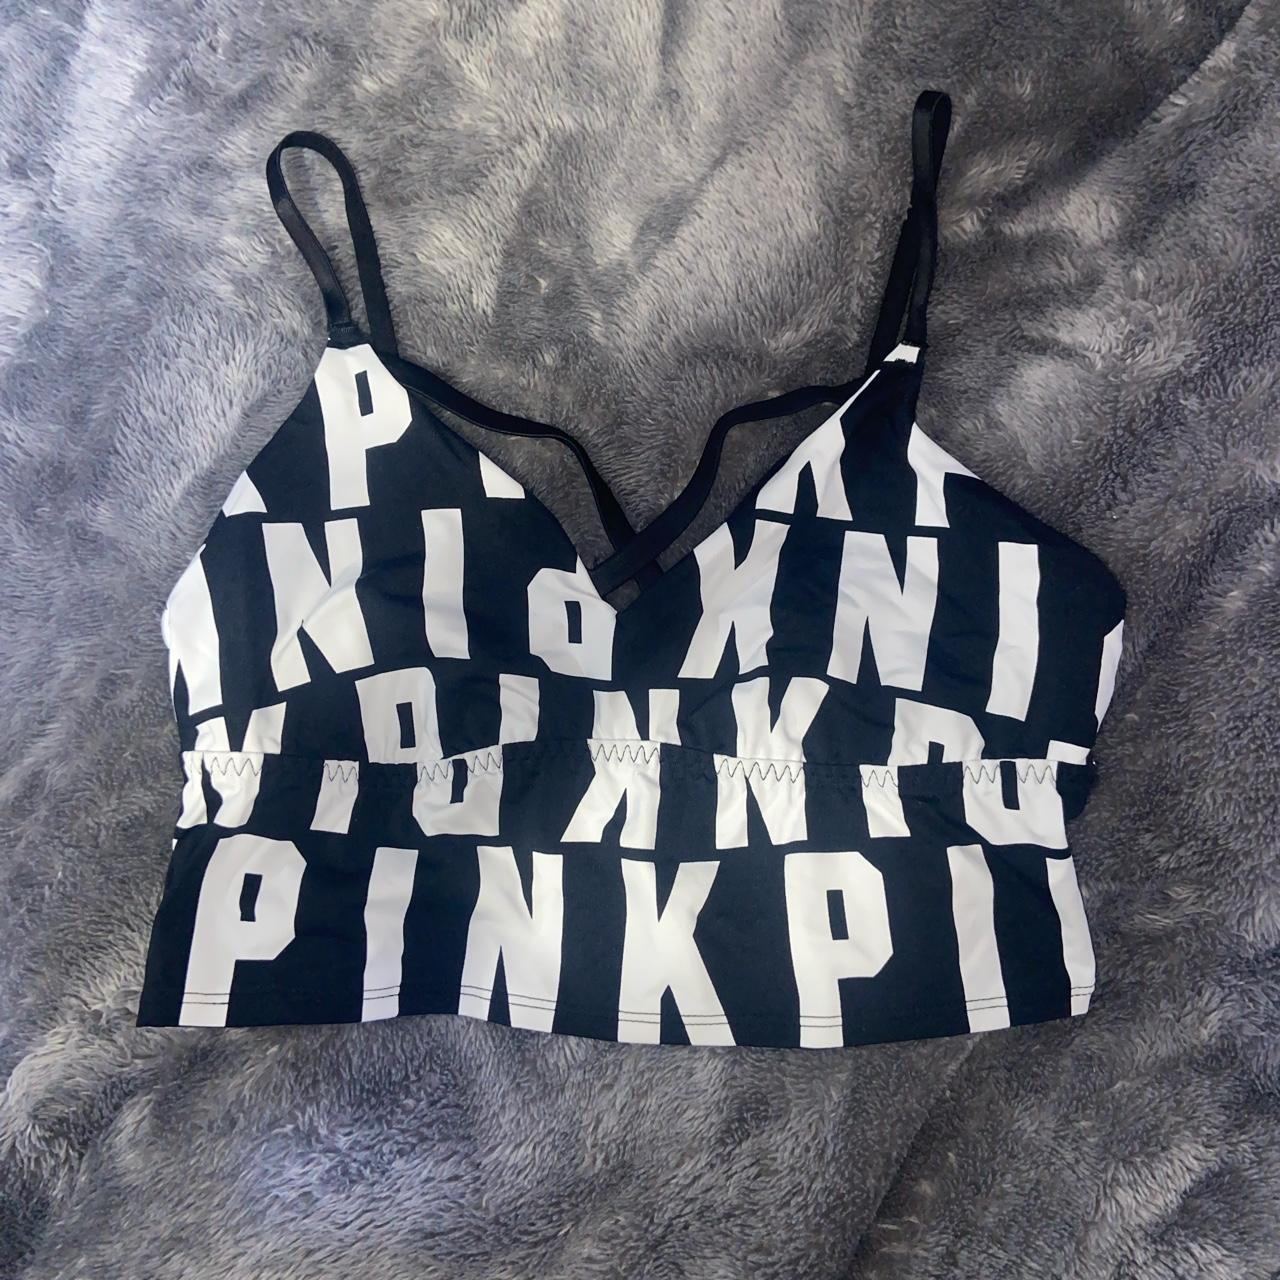 Victoria's Secret PINK ultimate unlined bralette. - Depop